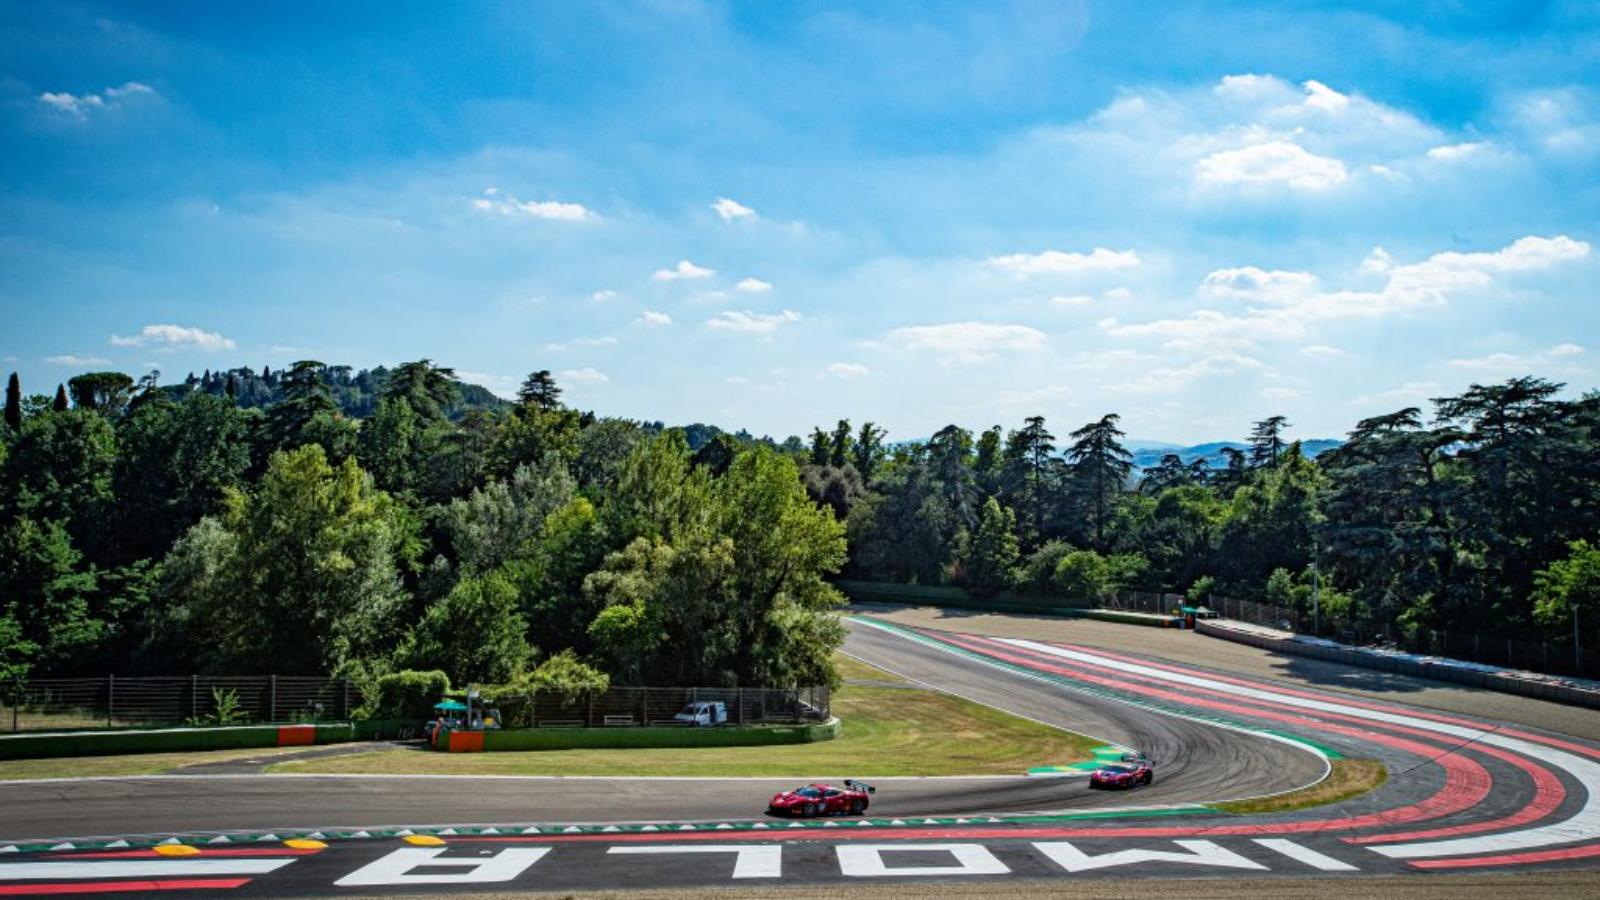 Imola-BO-Autodromo-Ferrari-in-pista-Archivio-Autodromo-Imola-ph_-Stefano-Calamelli350-CC-BY-NC-ND-4_0